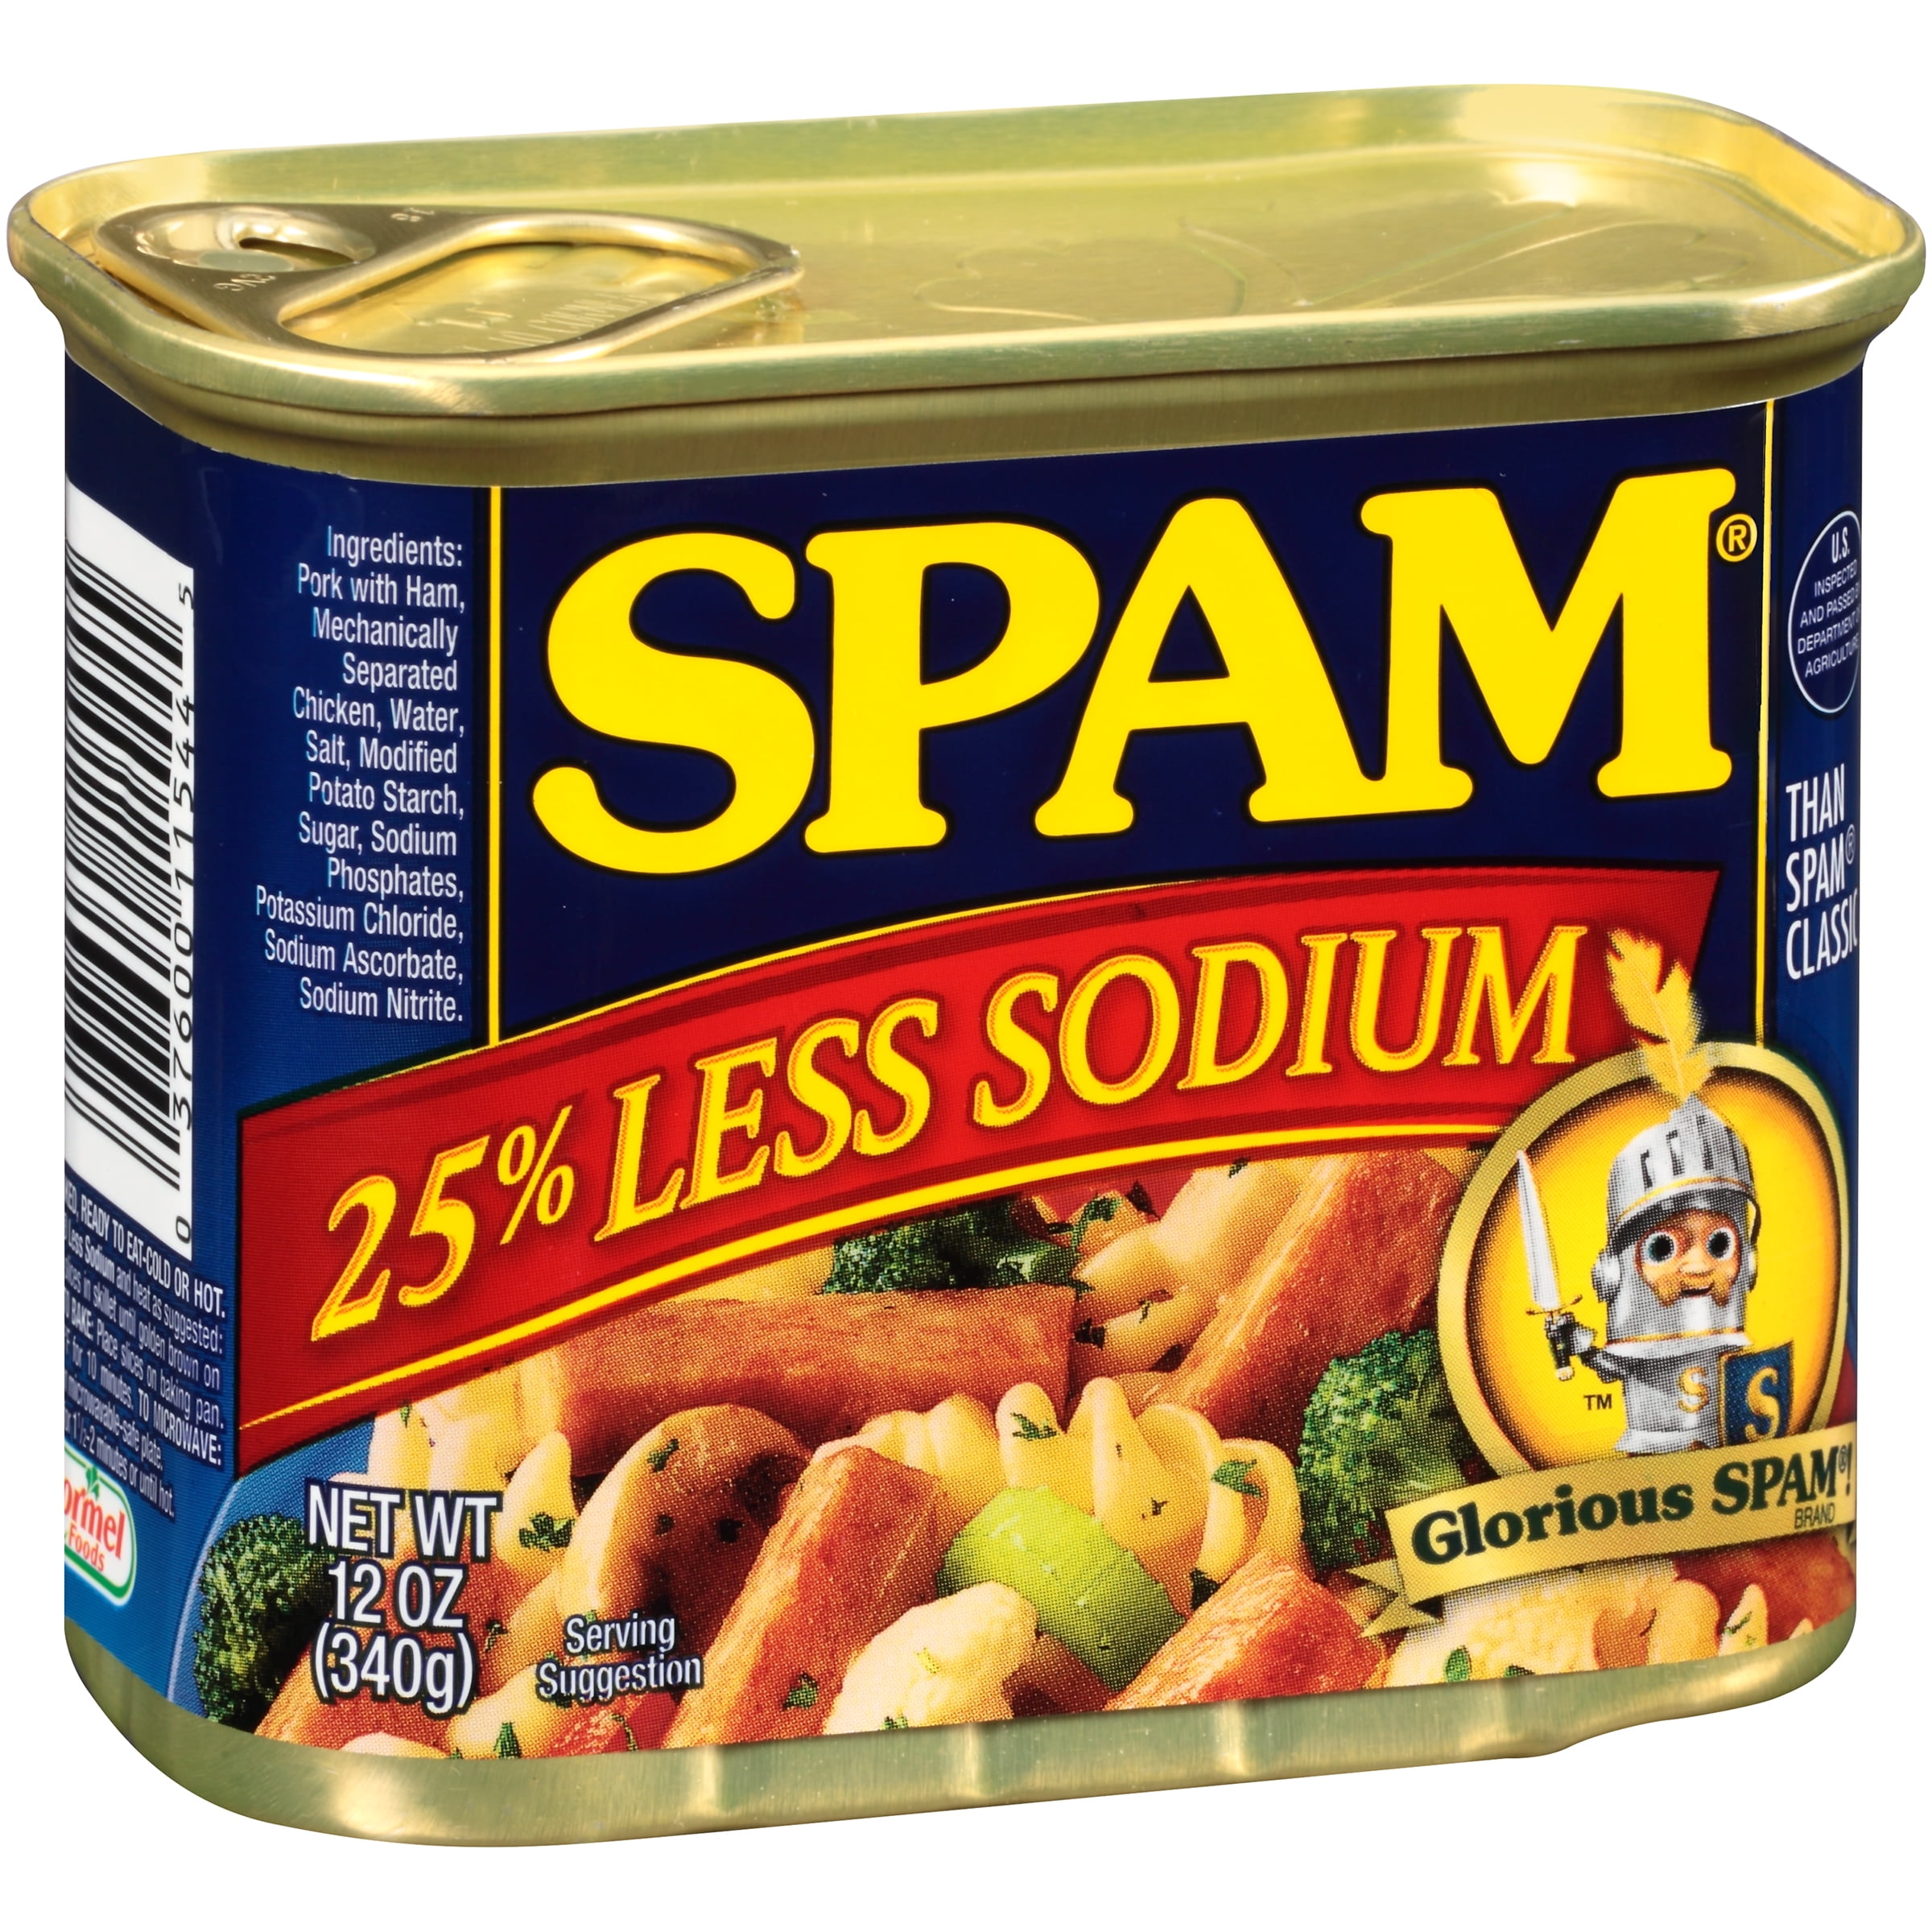 Simp spam